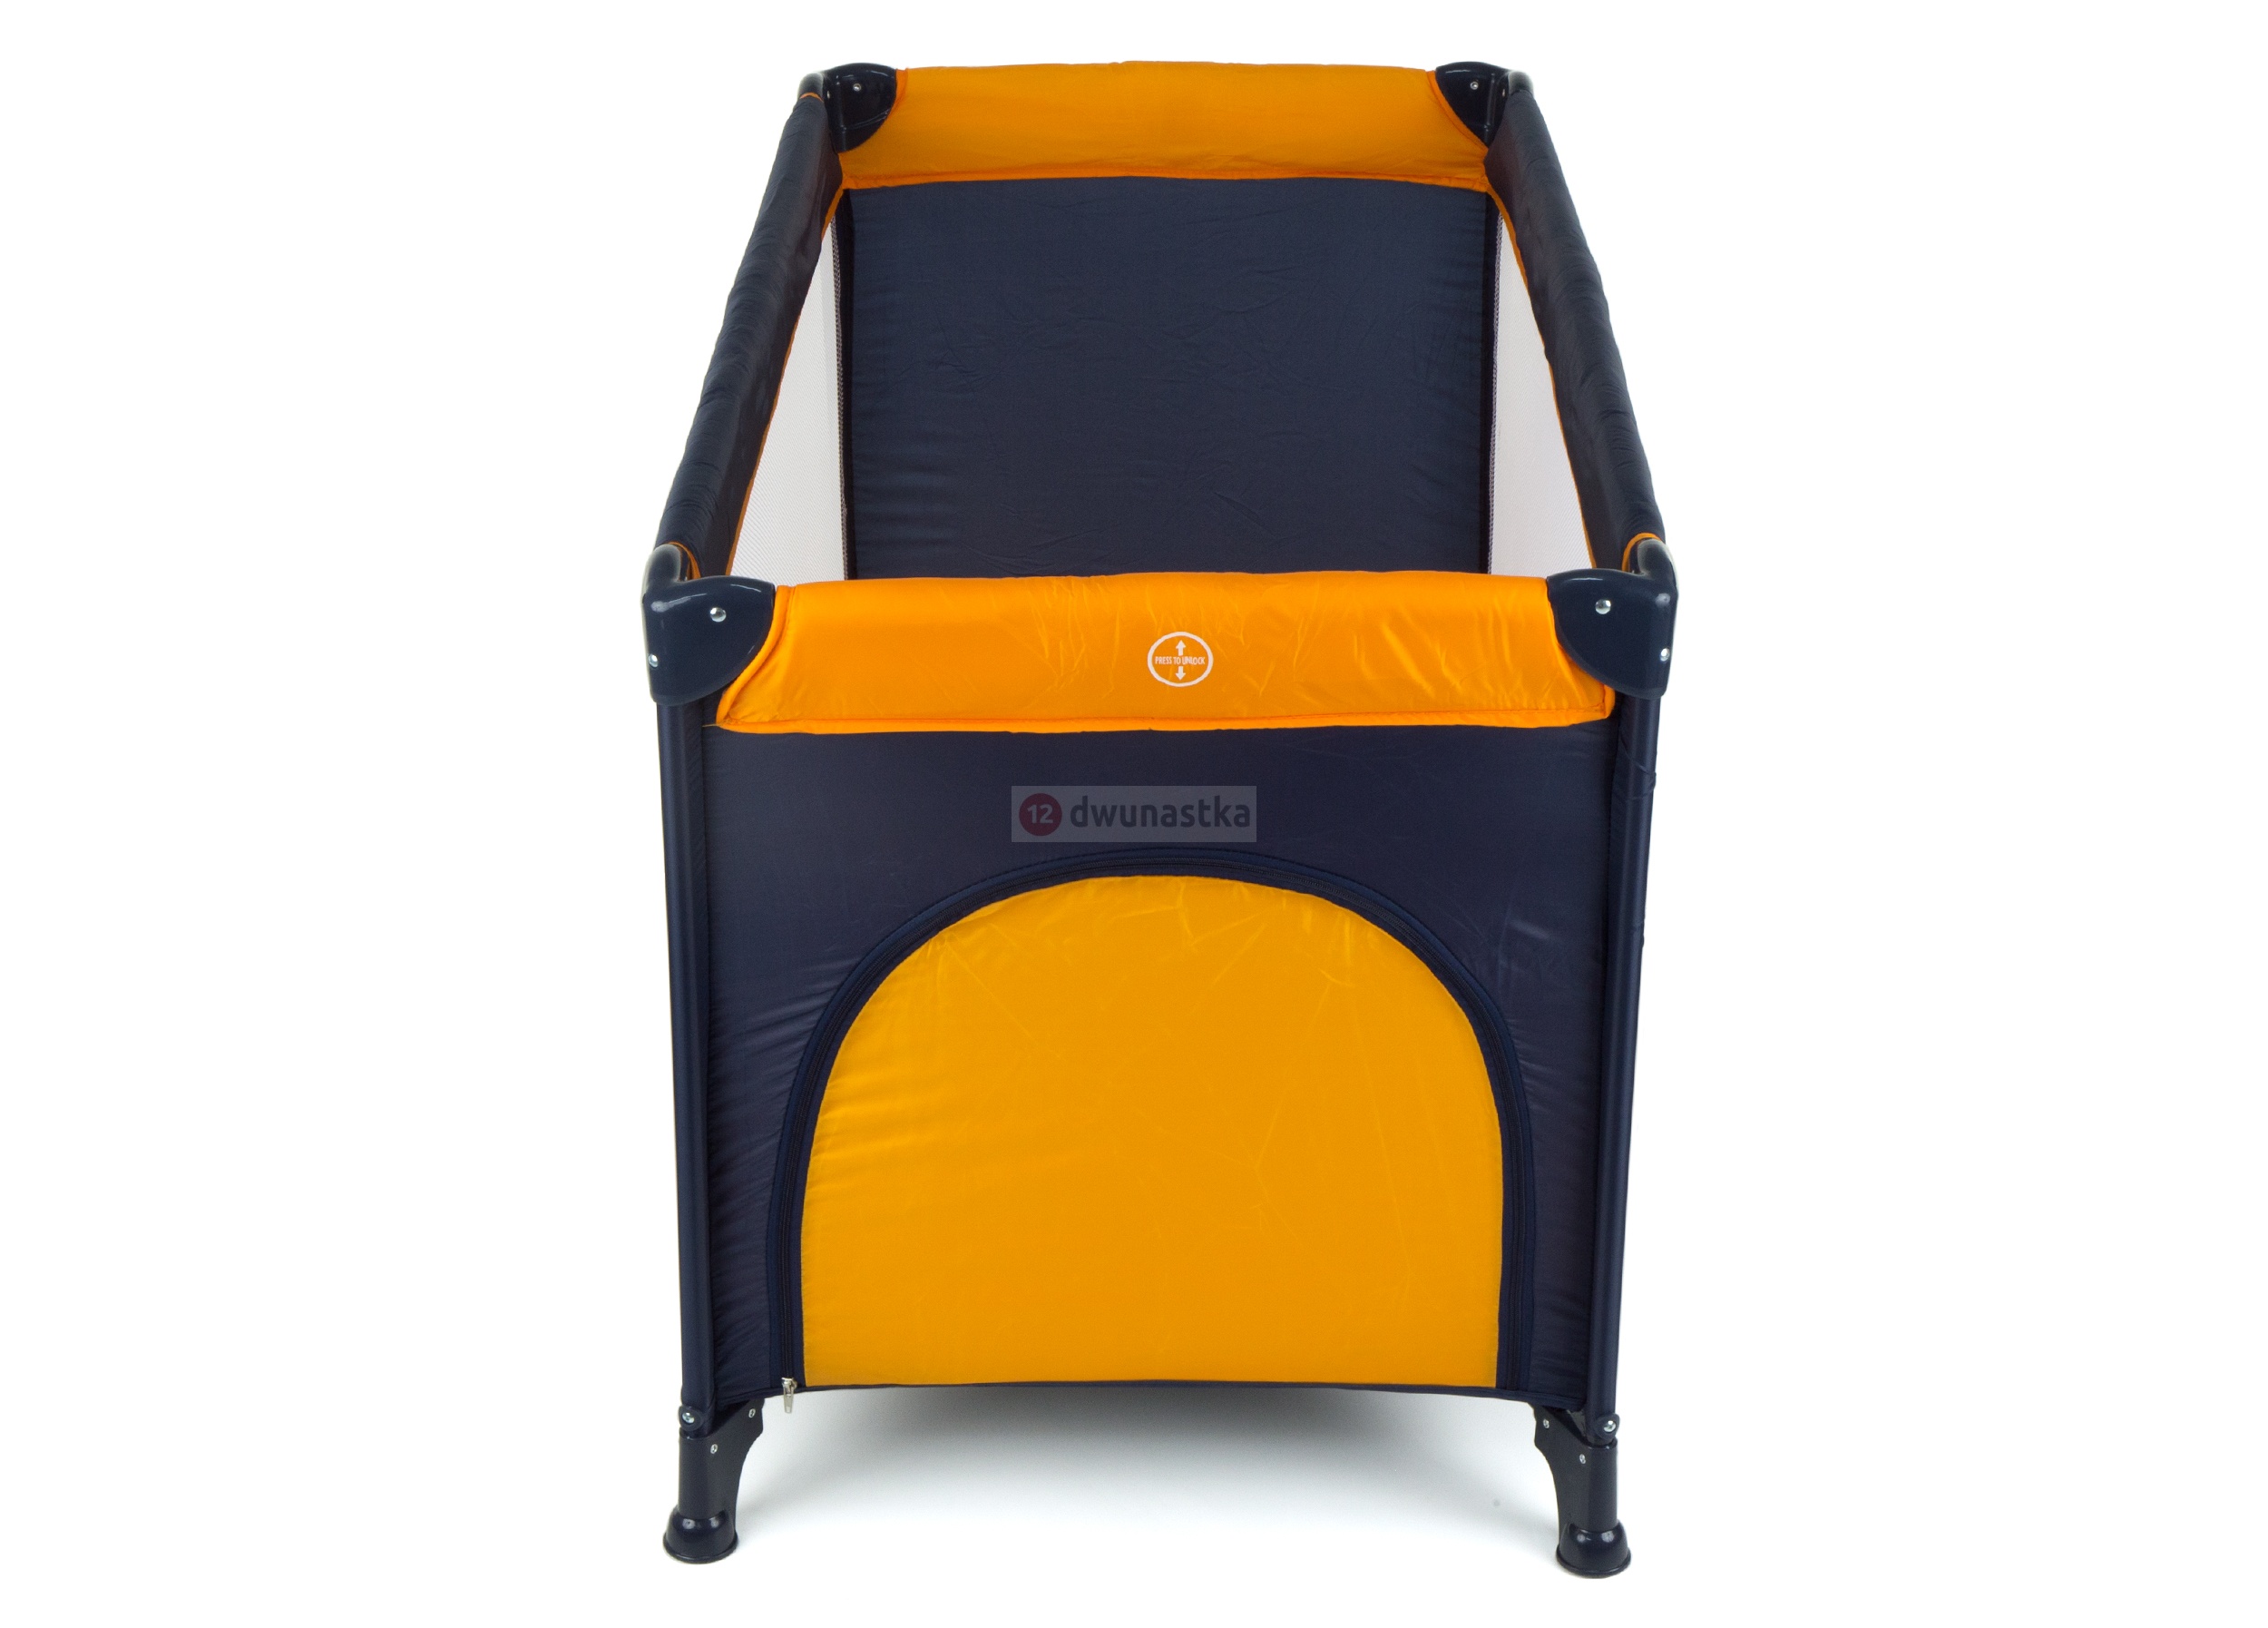 Patut pliant voiaj ultraportabil pentru copii „ISP MOOLINO”, usor de transportat, ideal pentru calatorii, material rezistent cu protectii laterale si saltea inclusa, Orange